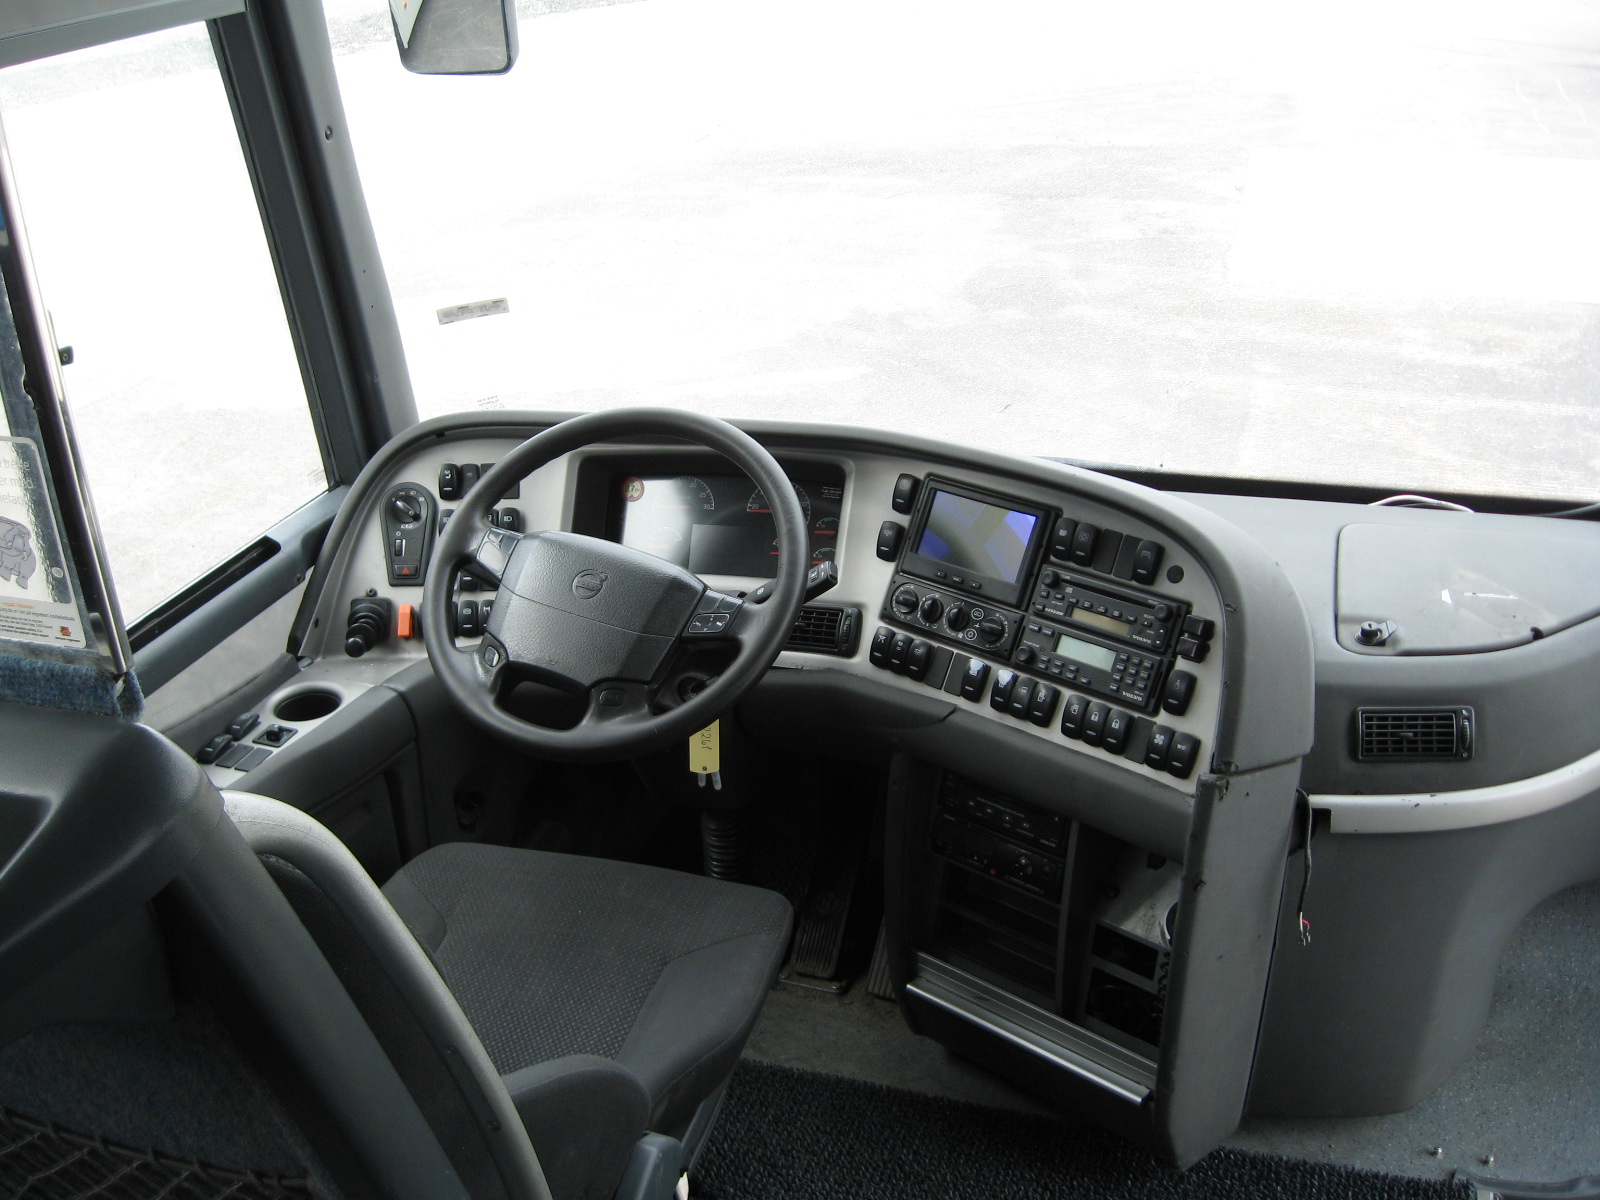 Vehicle image